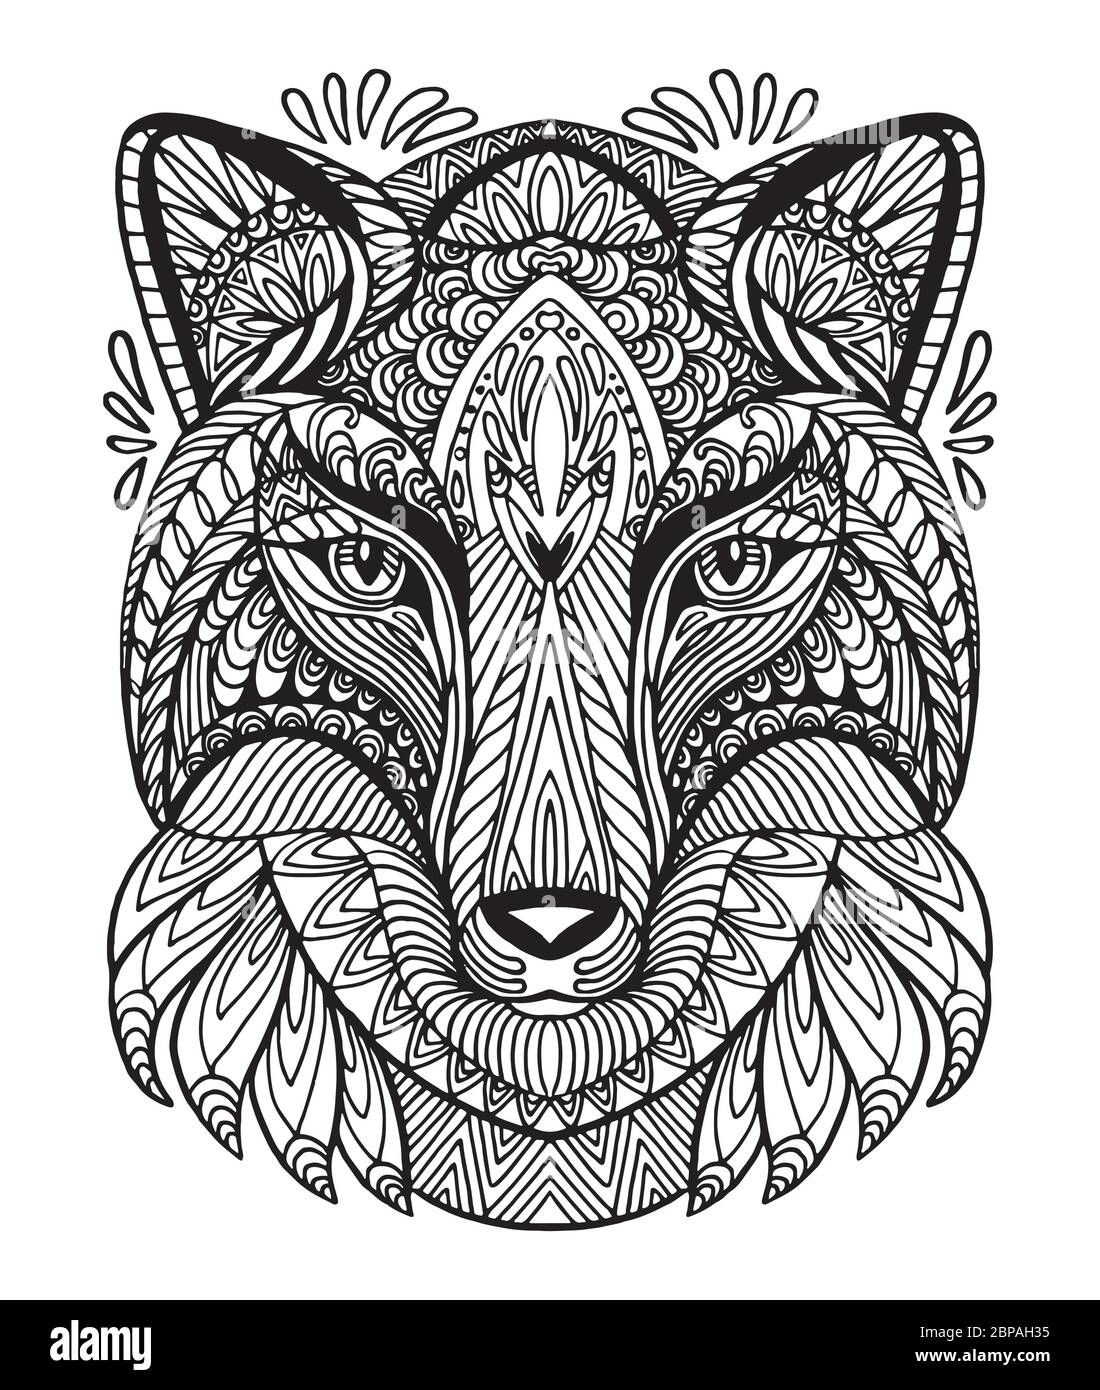 Vektor dekorativen Doodle ornamentalen Kopf des Fuchses. Abstrakte Vektor-Illustration von Fuchs schwarze Kontur isoliert auf weißem Hintergrund. Abbildung des Lagerbestands Stock Vektor